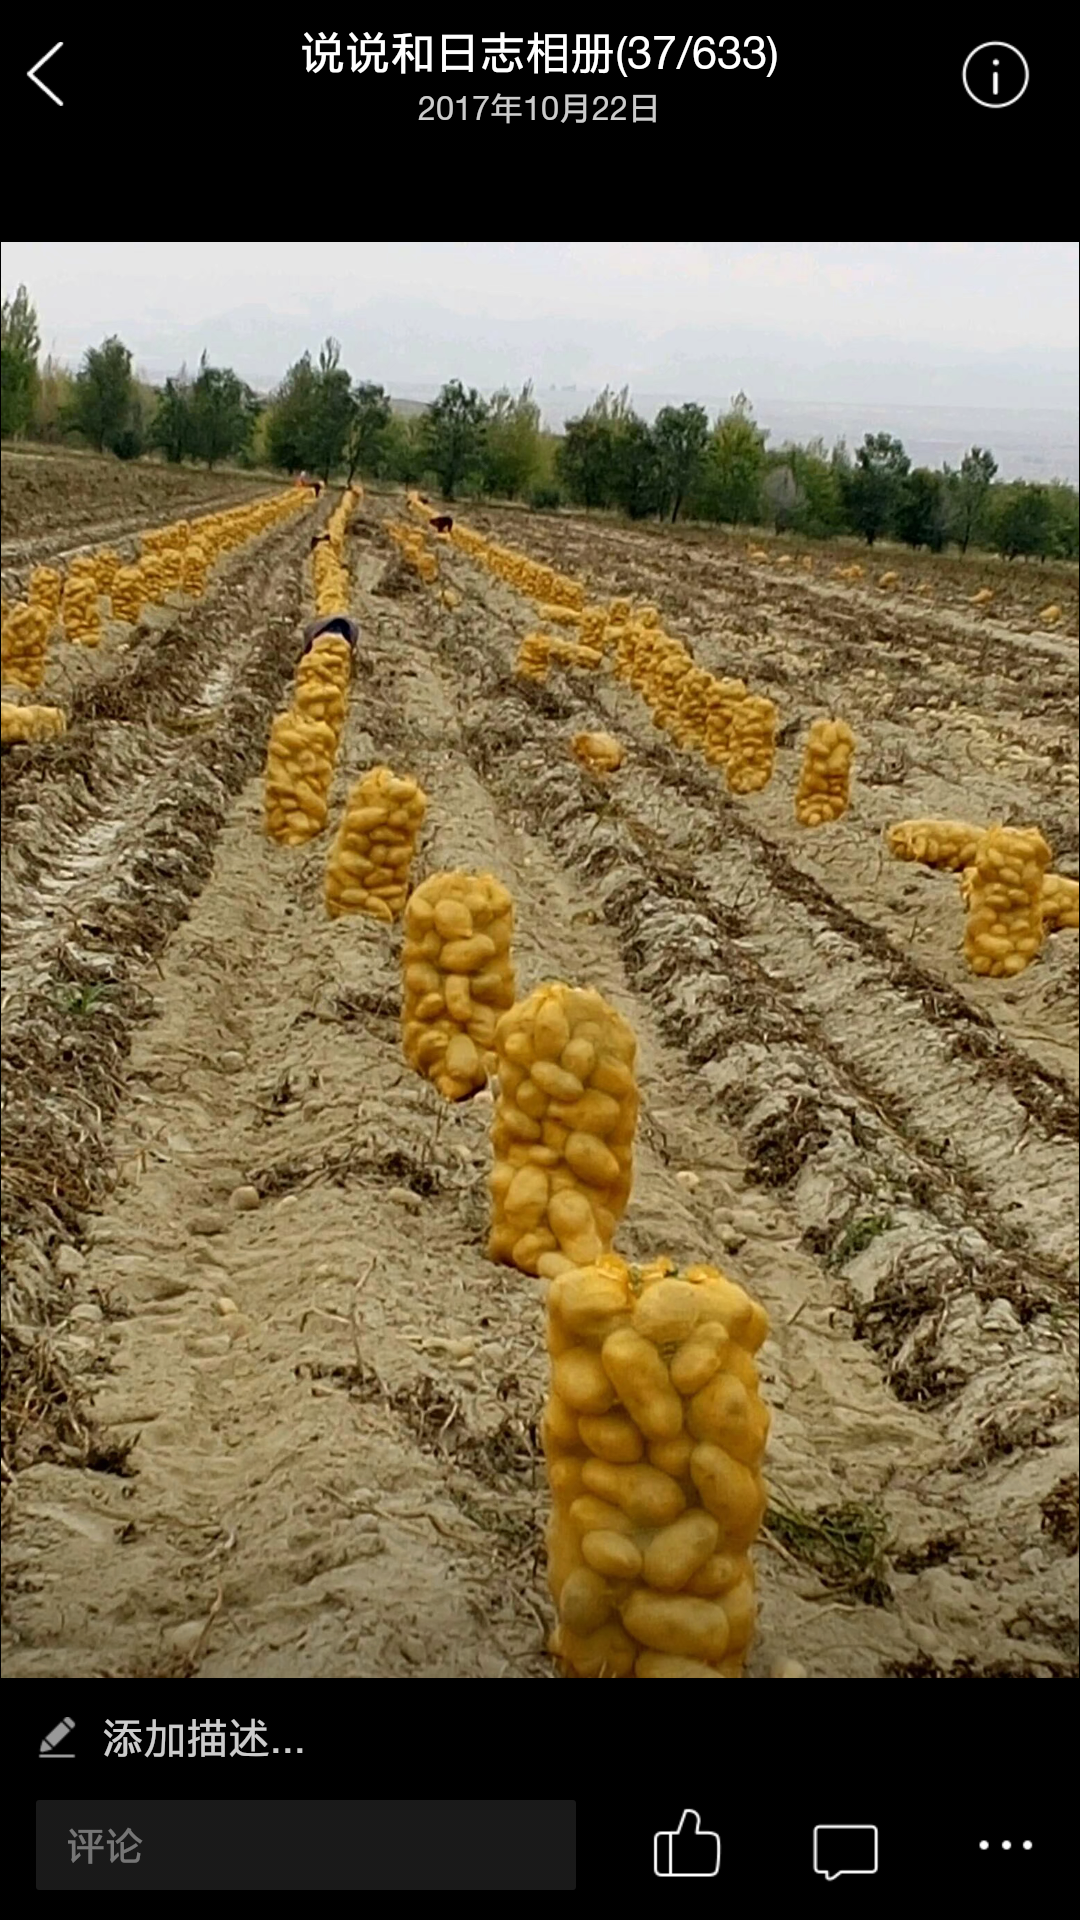 眼下新疆温泉县88团的土豆面临上市。这里早晚温差大，土豆品质优良，沙土种植，颜色亮又光，欢迎前来订购，联系电话:13779022724老刘